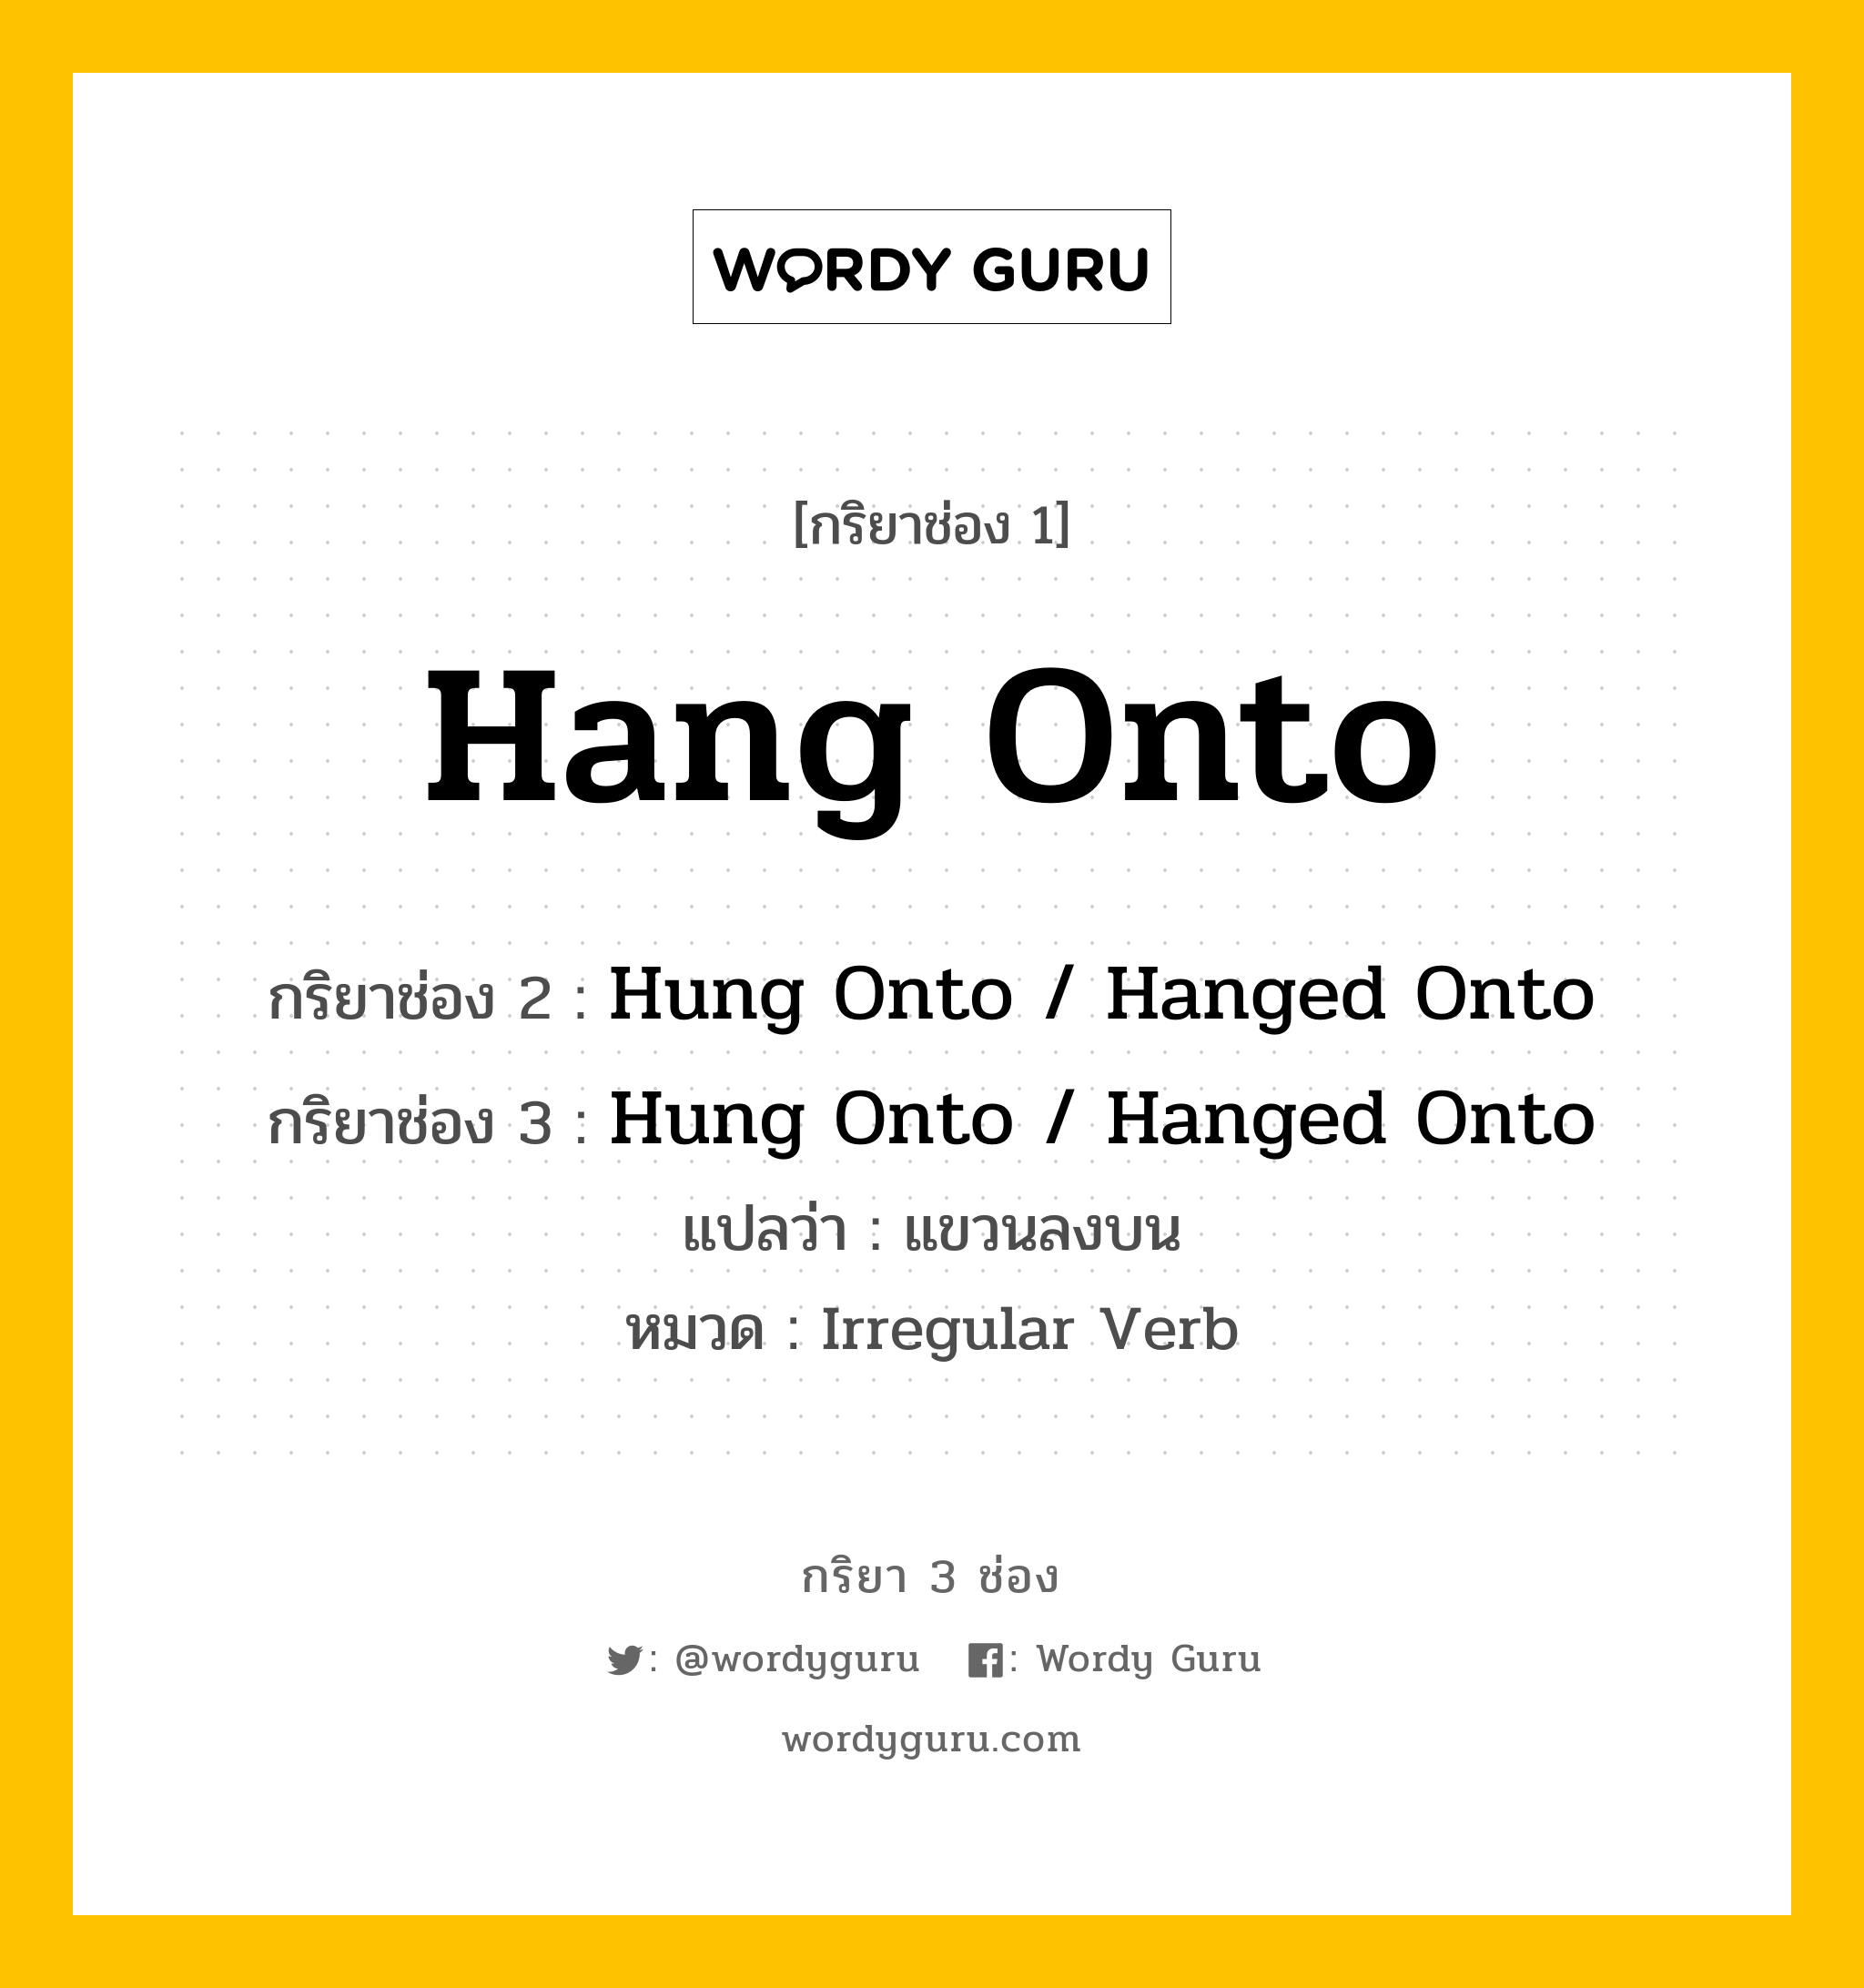 กริยา 3 ช่อง ของ Hang Onto คืออะไร? มาดูคำอ่าน คำแปลกันเลย, กริยาช่อง 1 Hang Onto กริยาช่อง 2 Hung Onto / Hanged Onto กริยาช่อง 3 Hung Onto / Hanged Onto แปลว่า แขวนลงบน หมวด Irregular Verb หมวด Irregular Verb